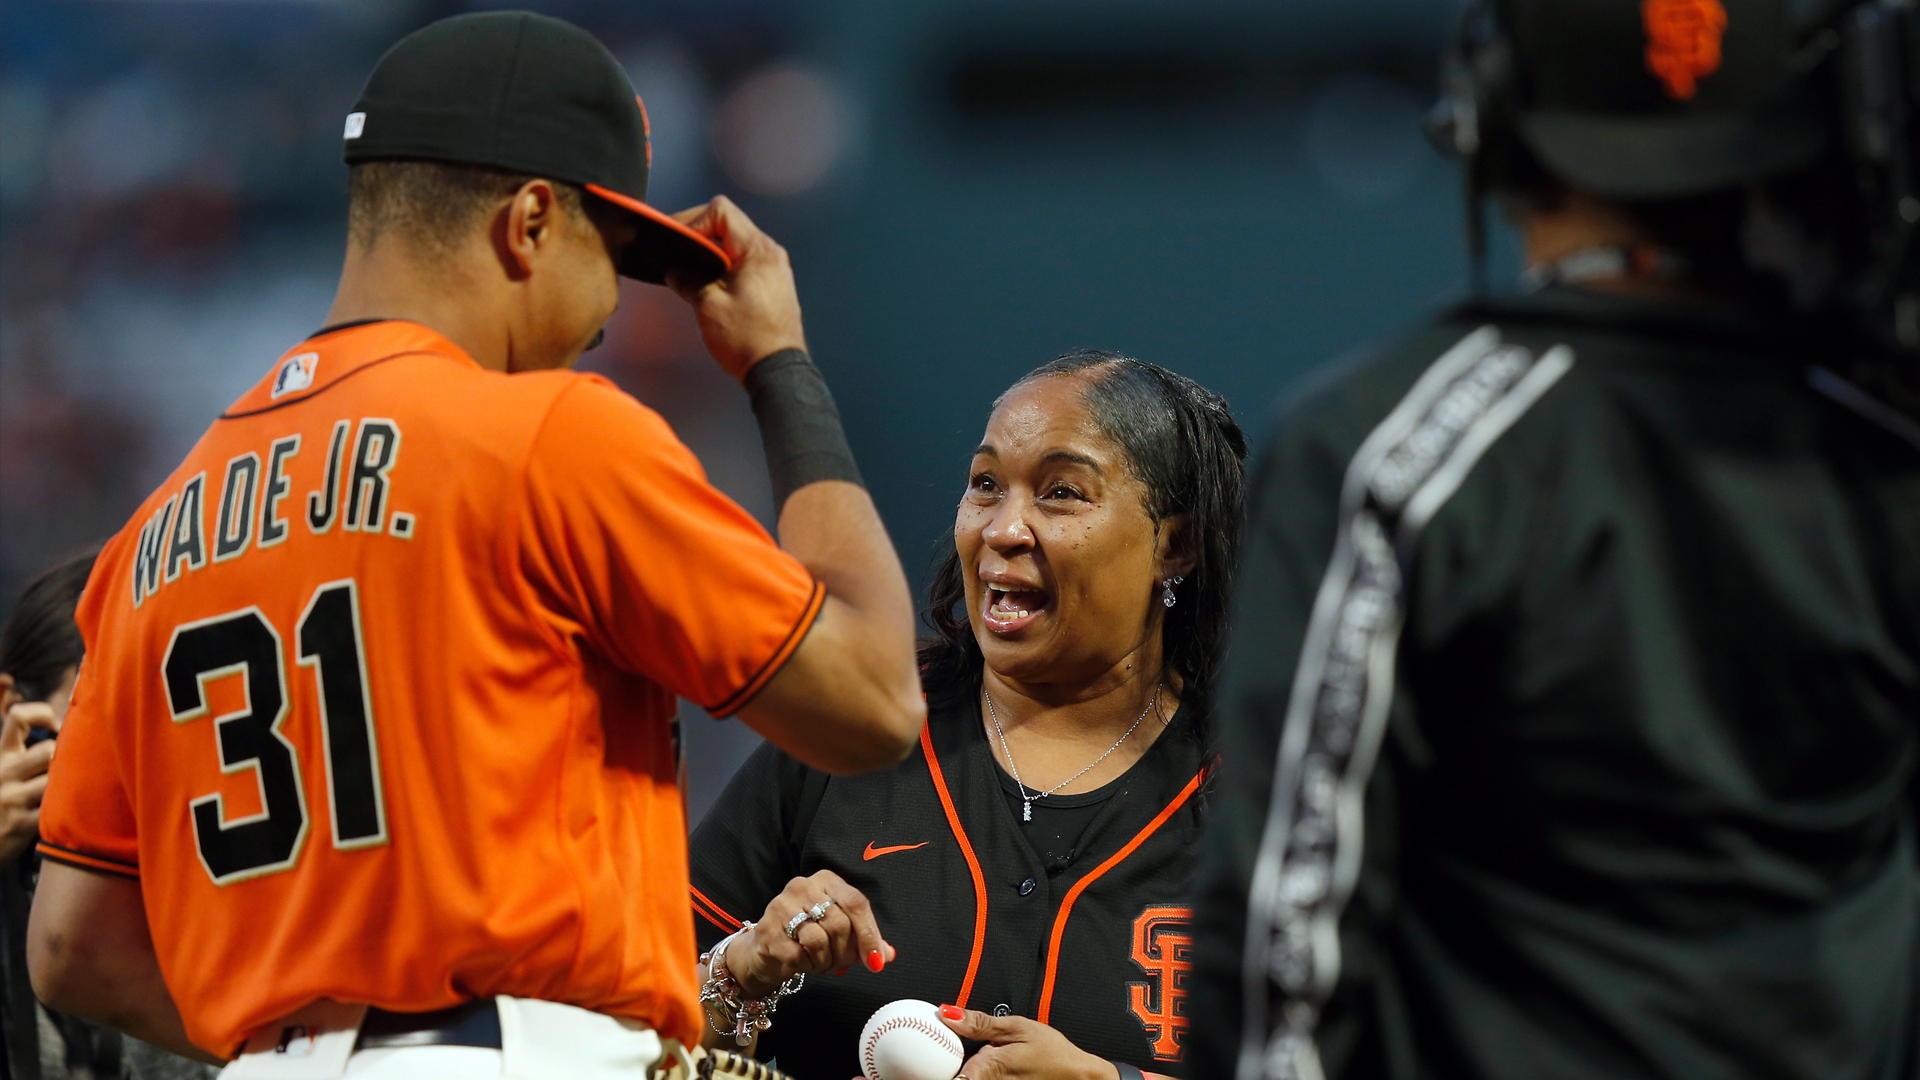 Giants' LaMonte Wade Jr., mother still talk about viral home run